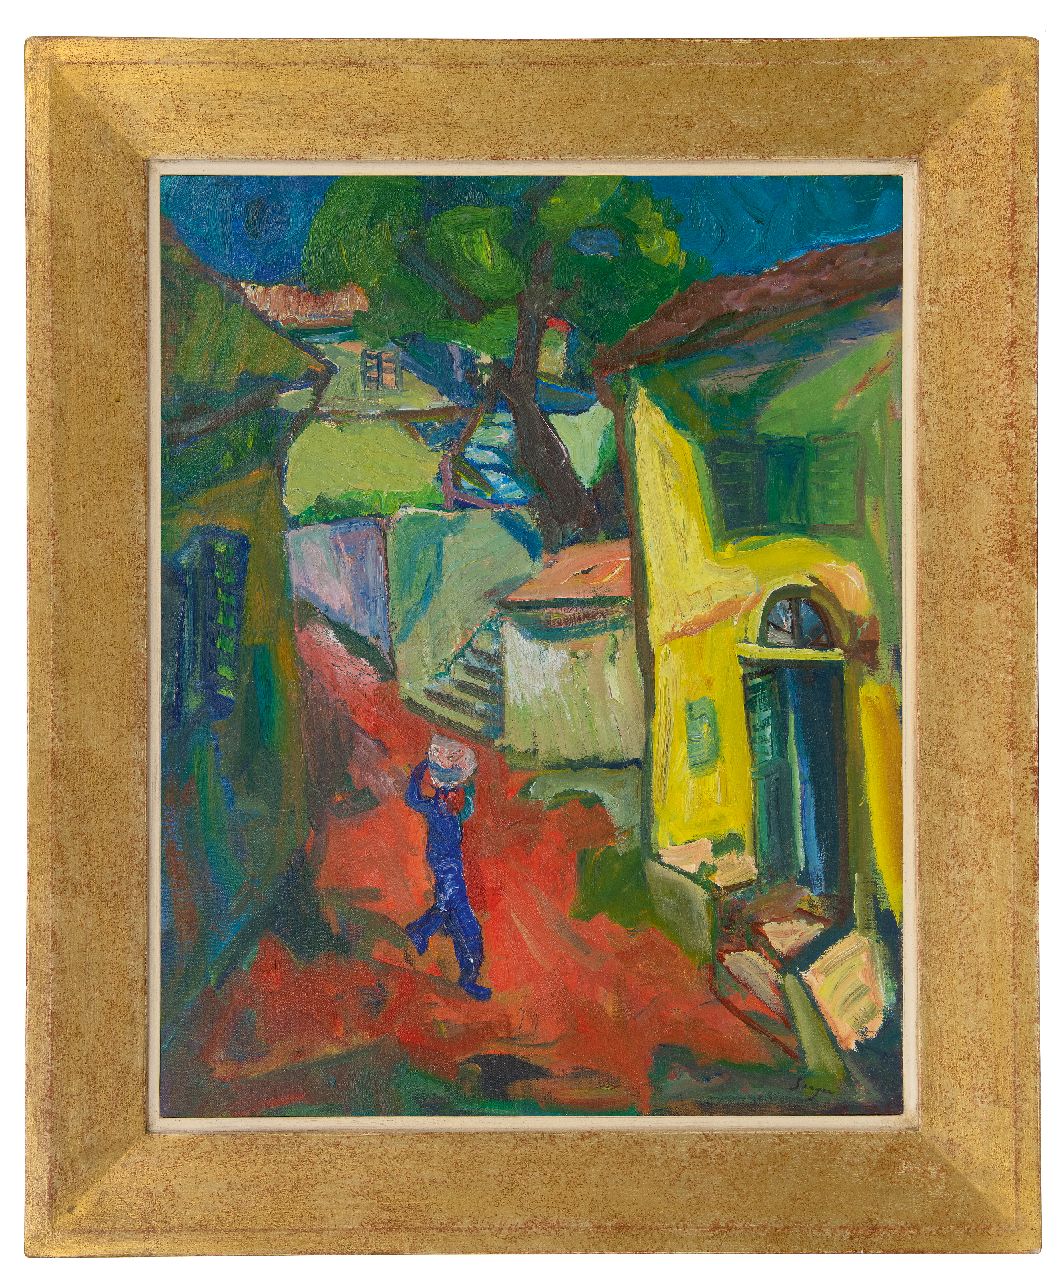 Serger F.B.  | Frederick Bedrich Serger, Mediterranean village, oil on canvas 71.4 x 56.0 cm, signed l.r.